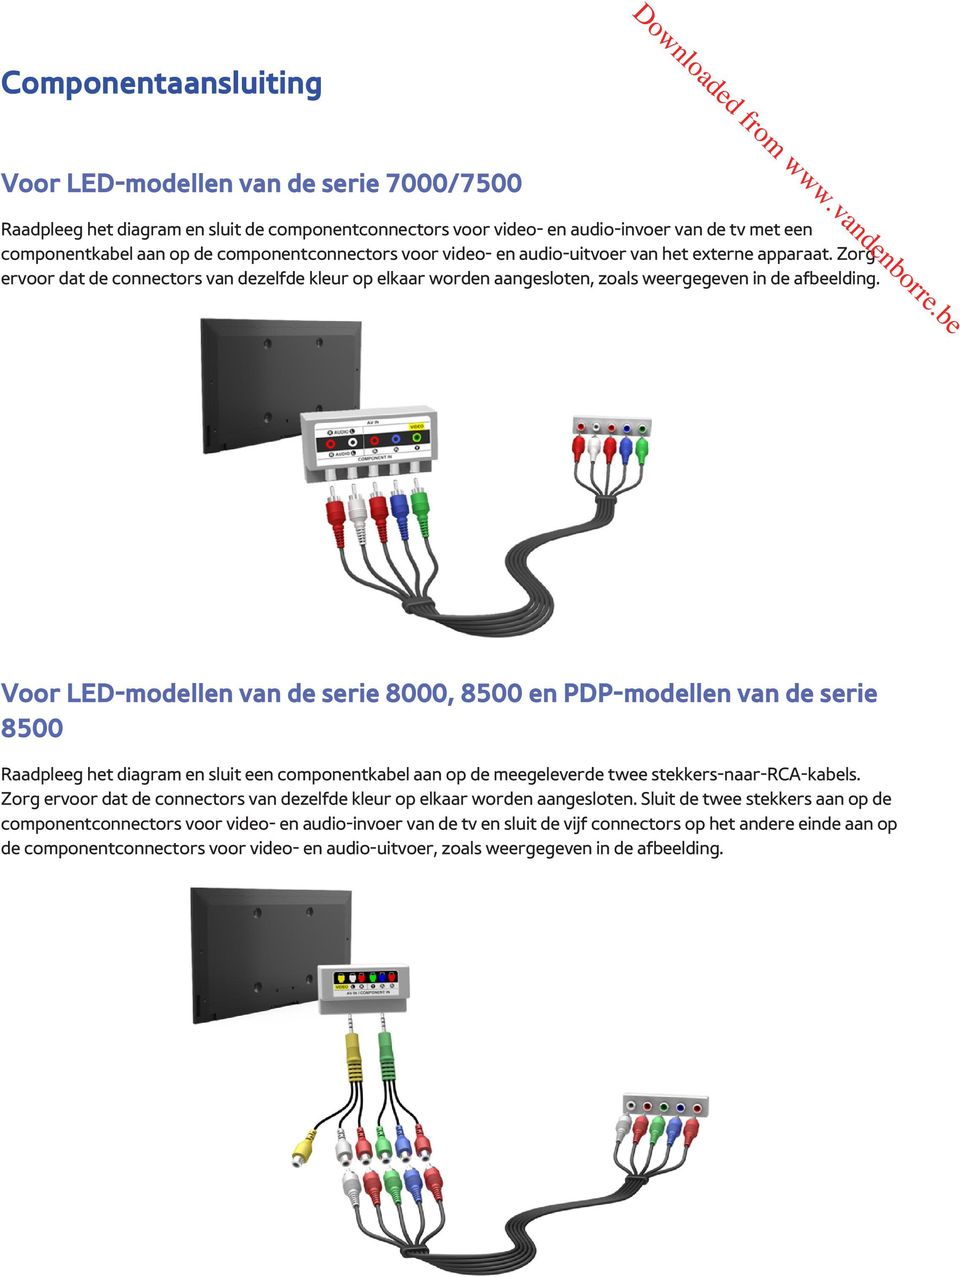 Voor LED-modellen van de serie 8000, 8500 en PDP-modellen van de serie 8500 Raadpleeg het diagram en sluit een componentkabel aan op de meegeleverde twee stekkers-naar-rca-kabels.